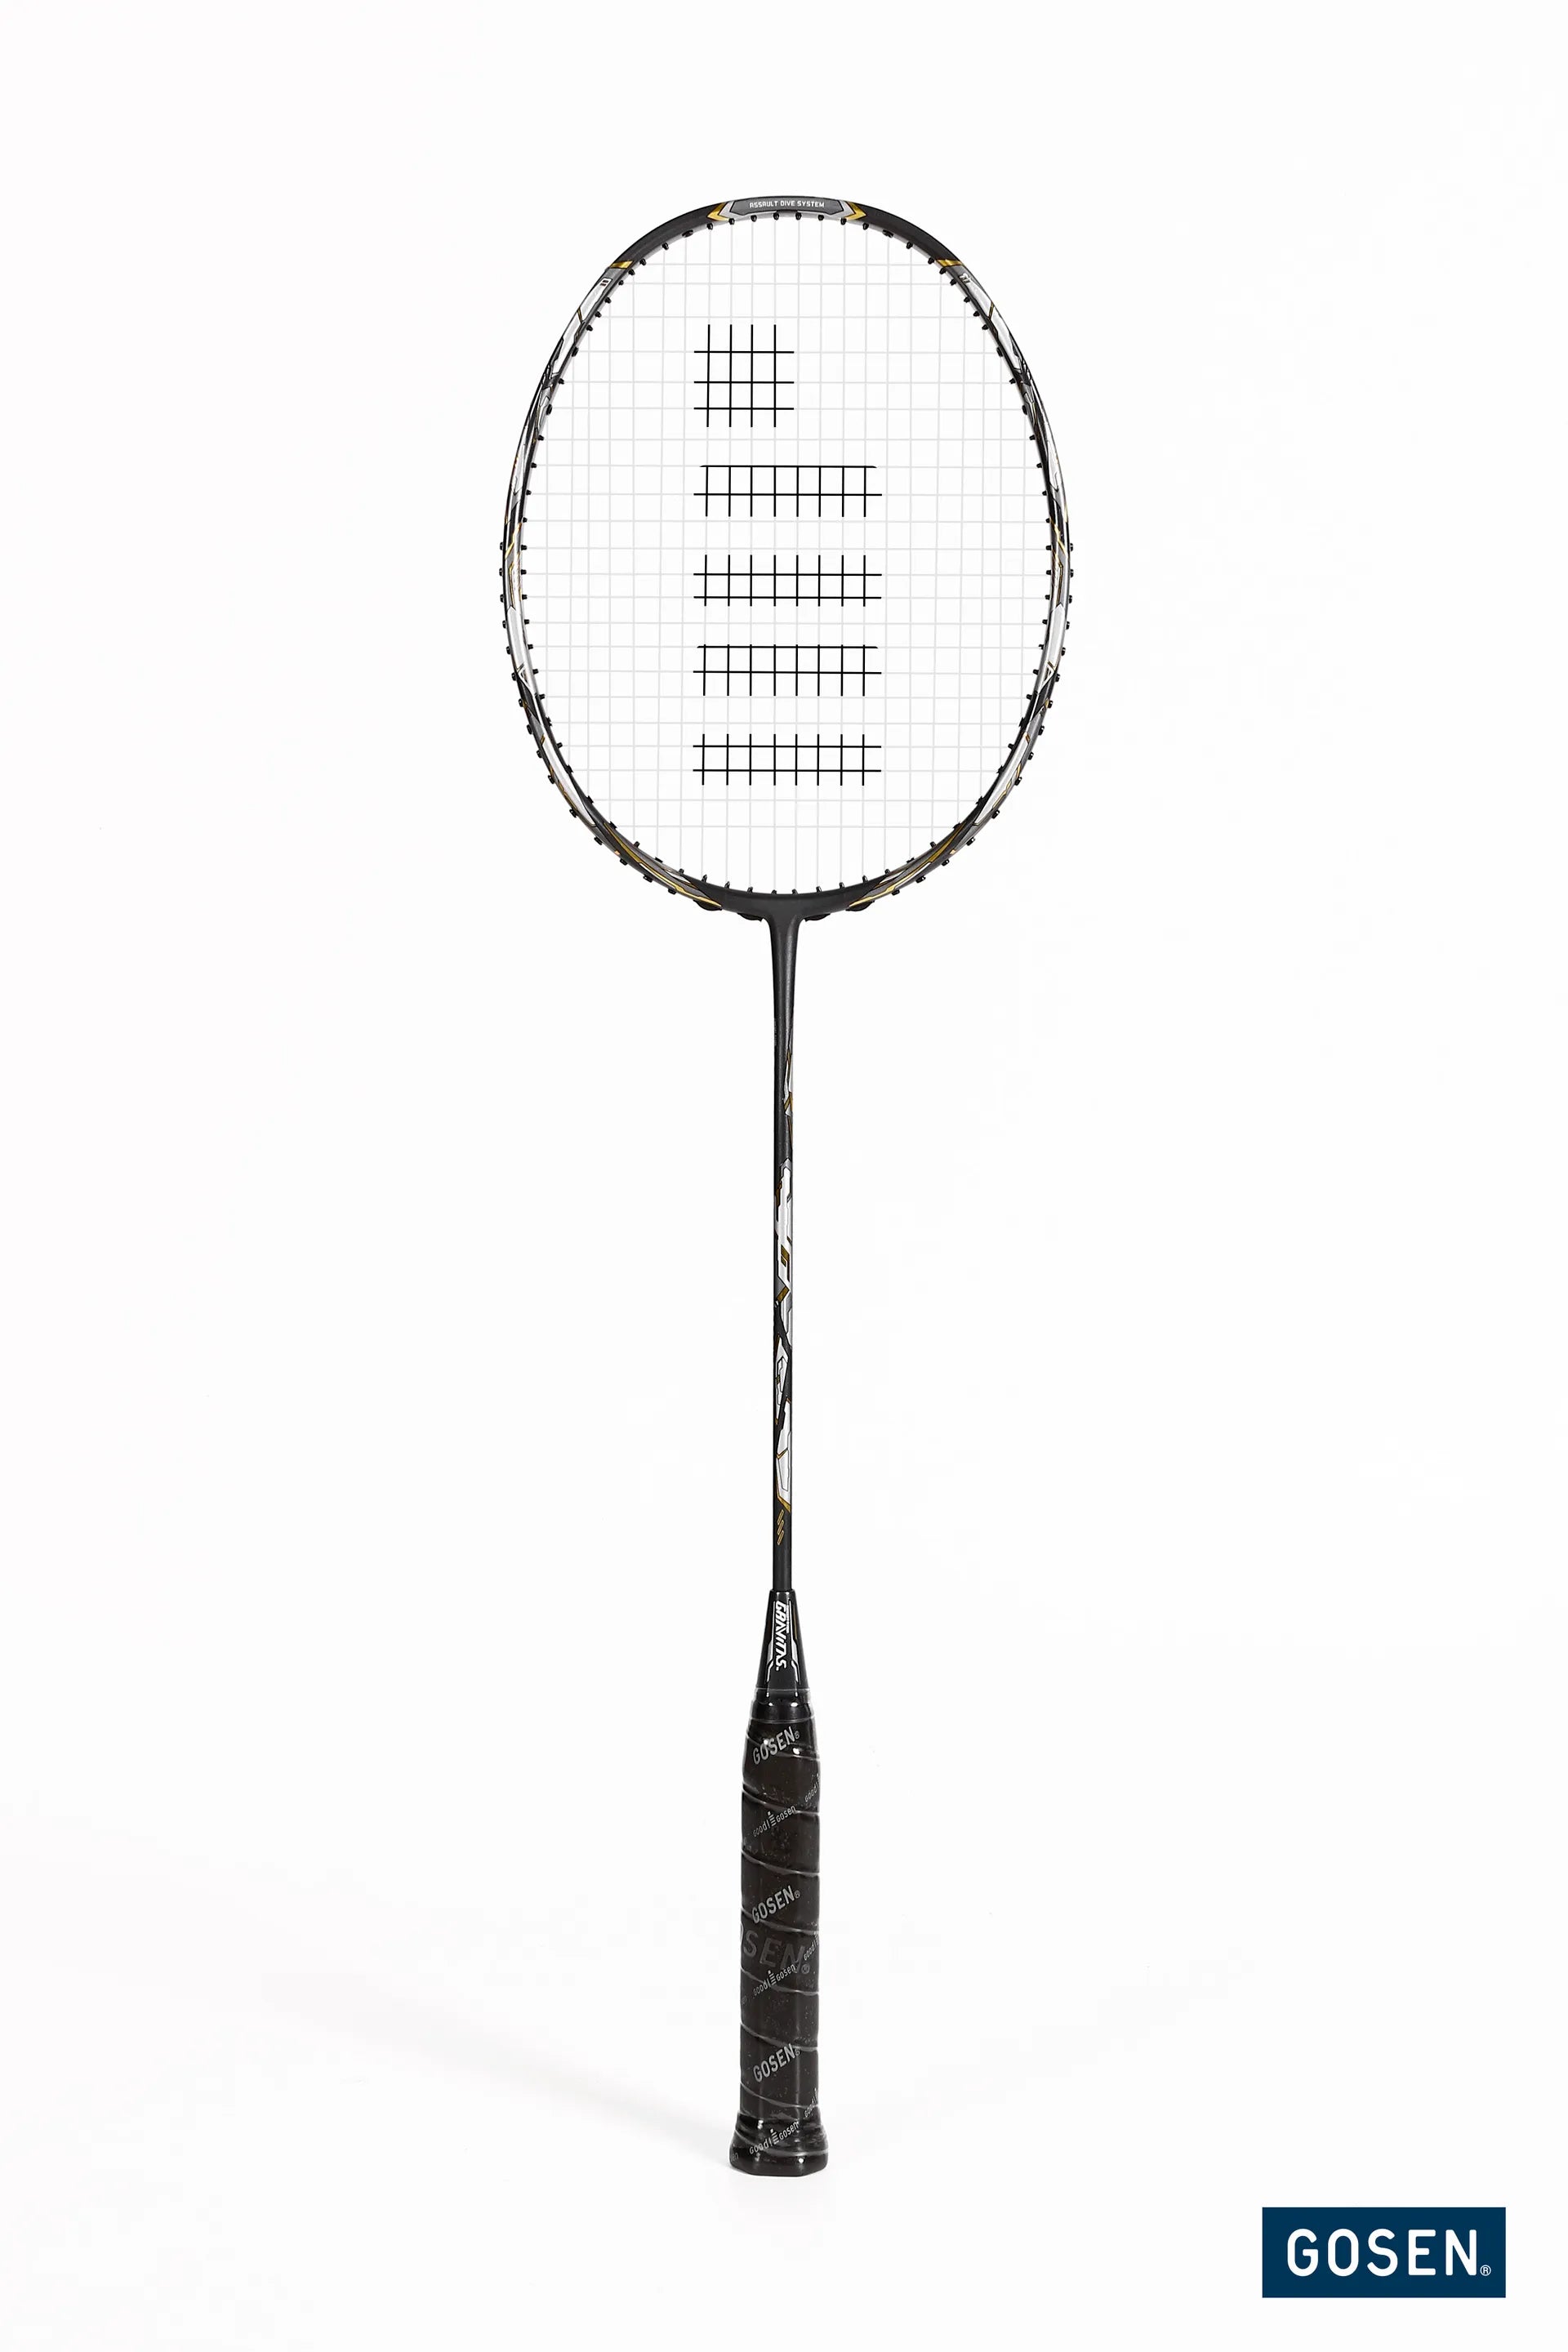 Gosen Gravitas 8.0SX Badminton racket